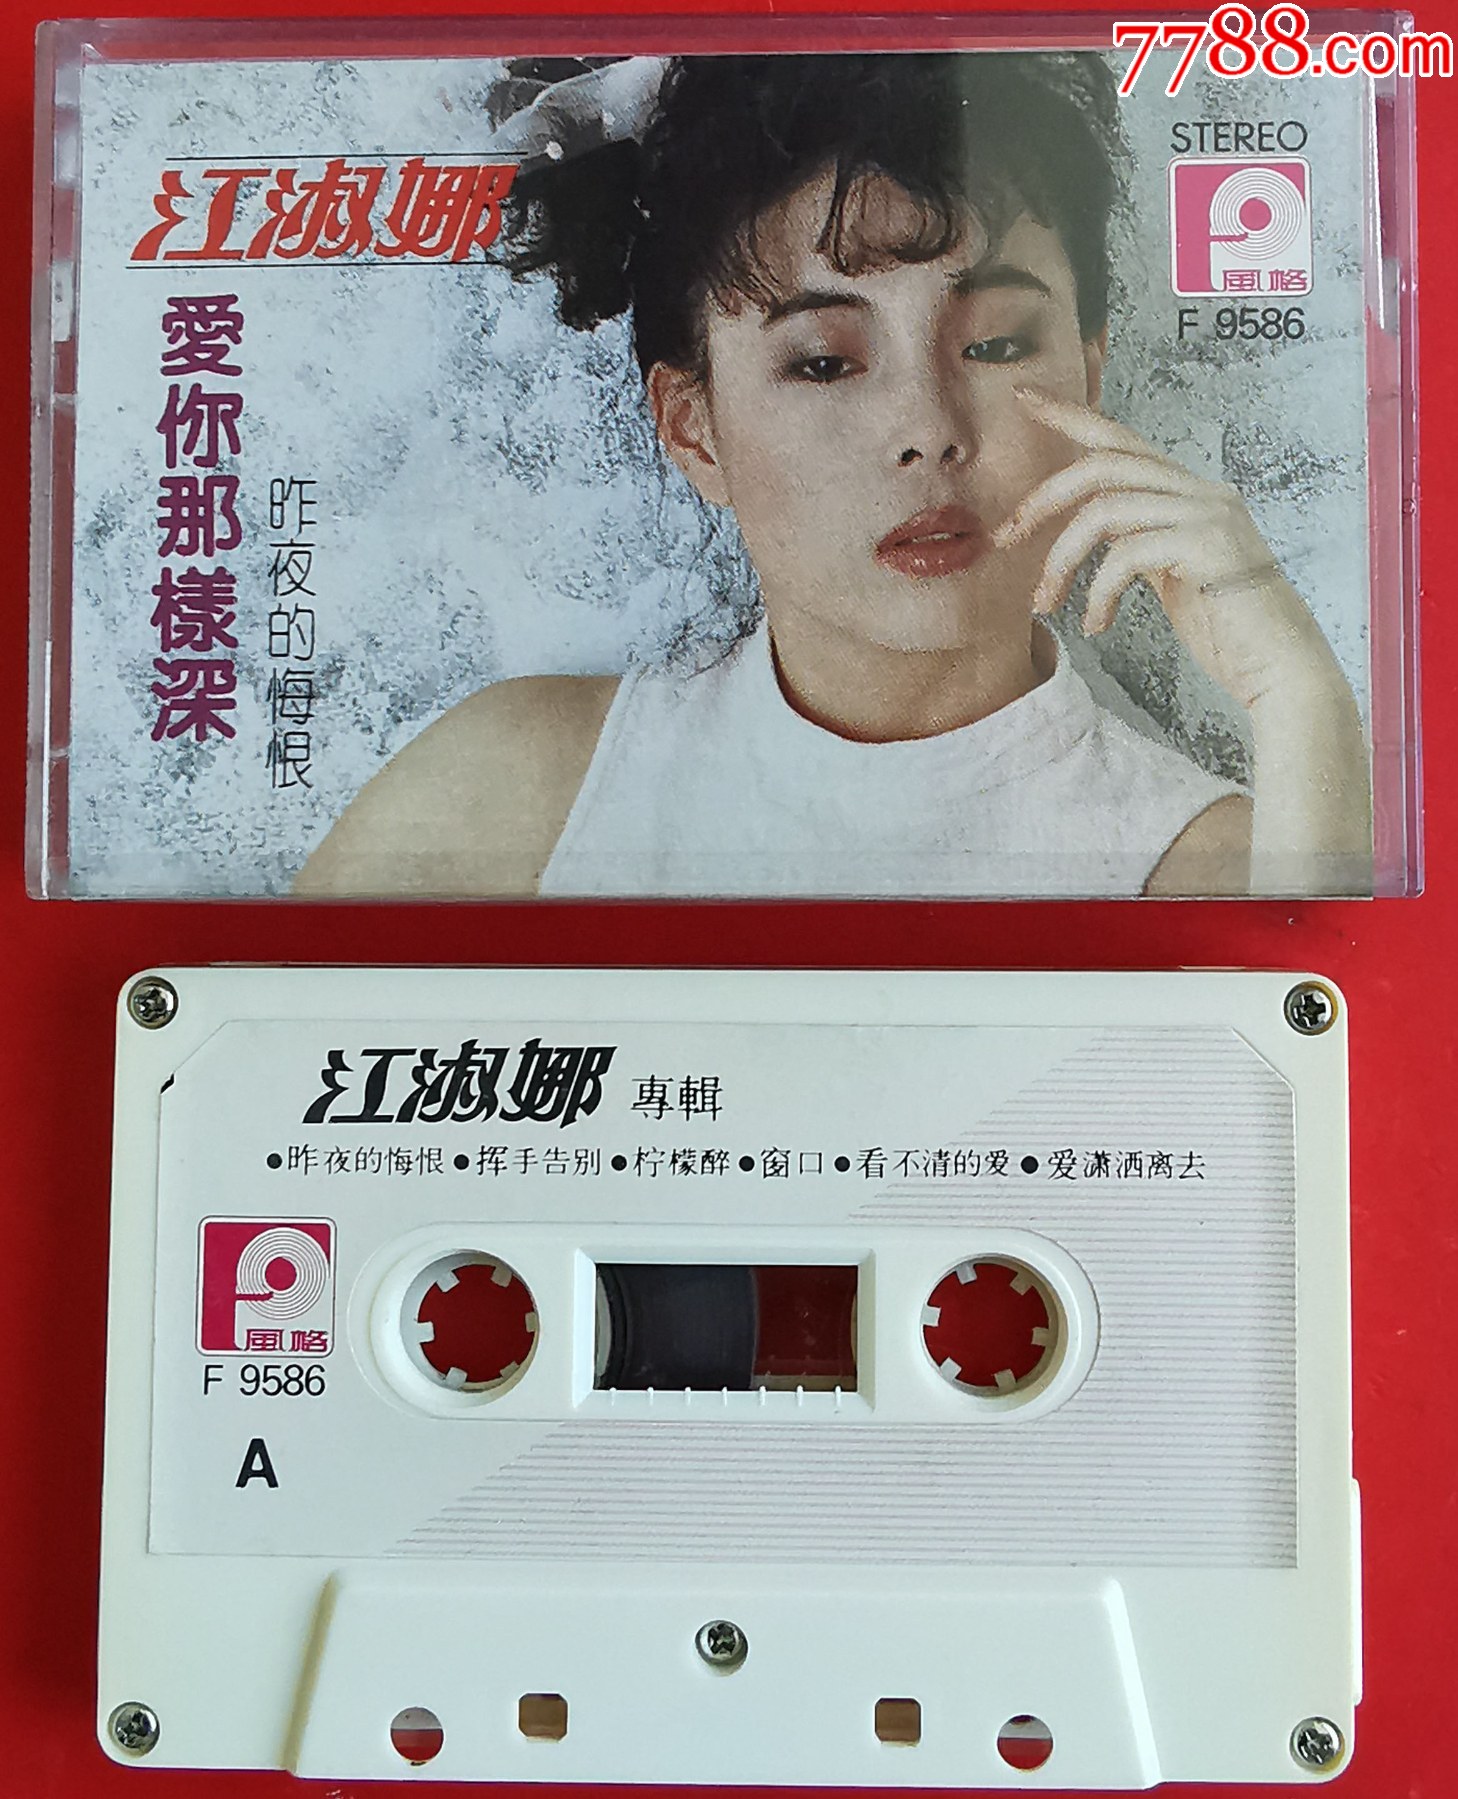 ‎Apple Music 上江淑娜的专辑《两个人的月亮》